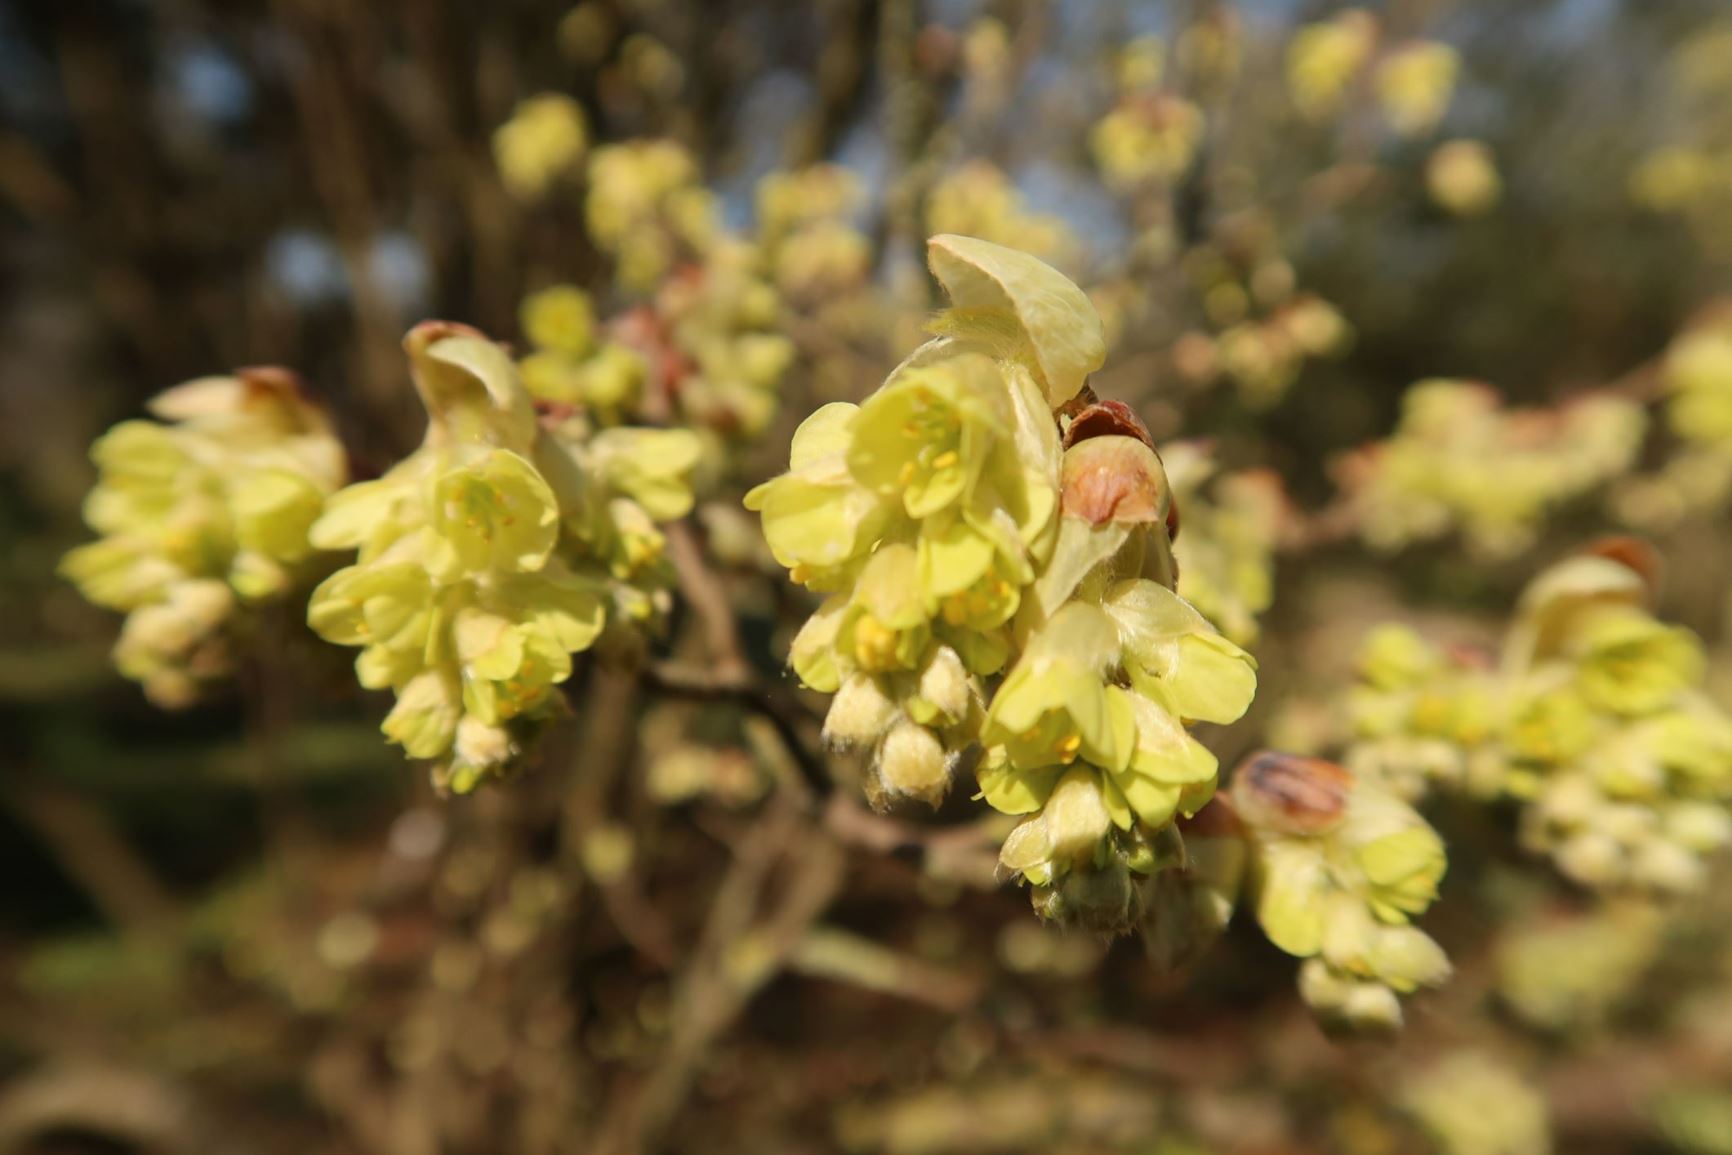 Corylopsis sinensis - Chinesische Blumenhasel, Chinese winter hazel